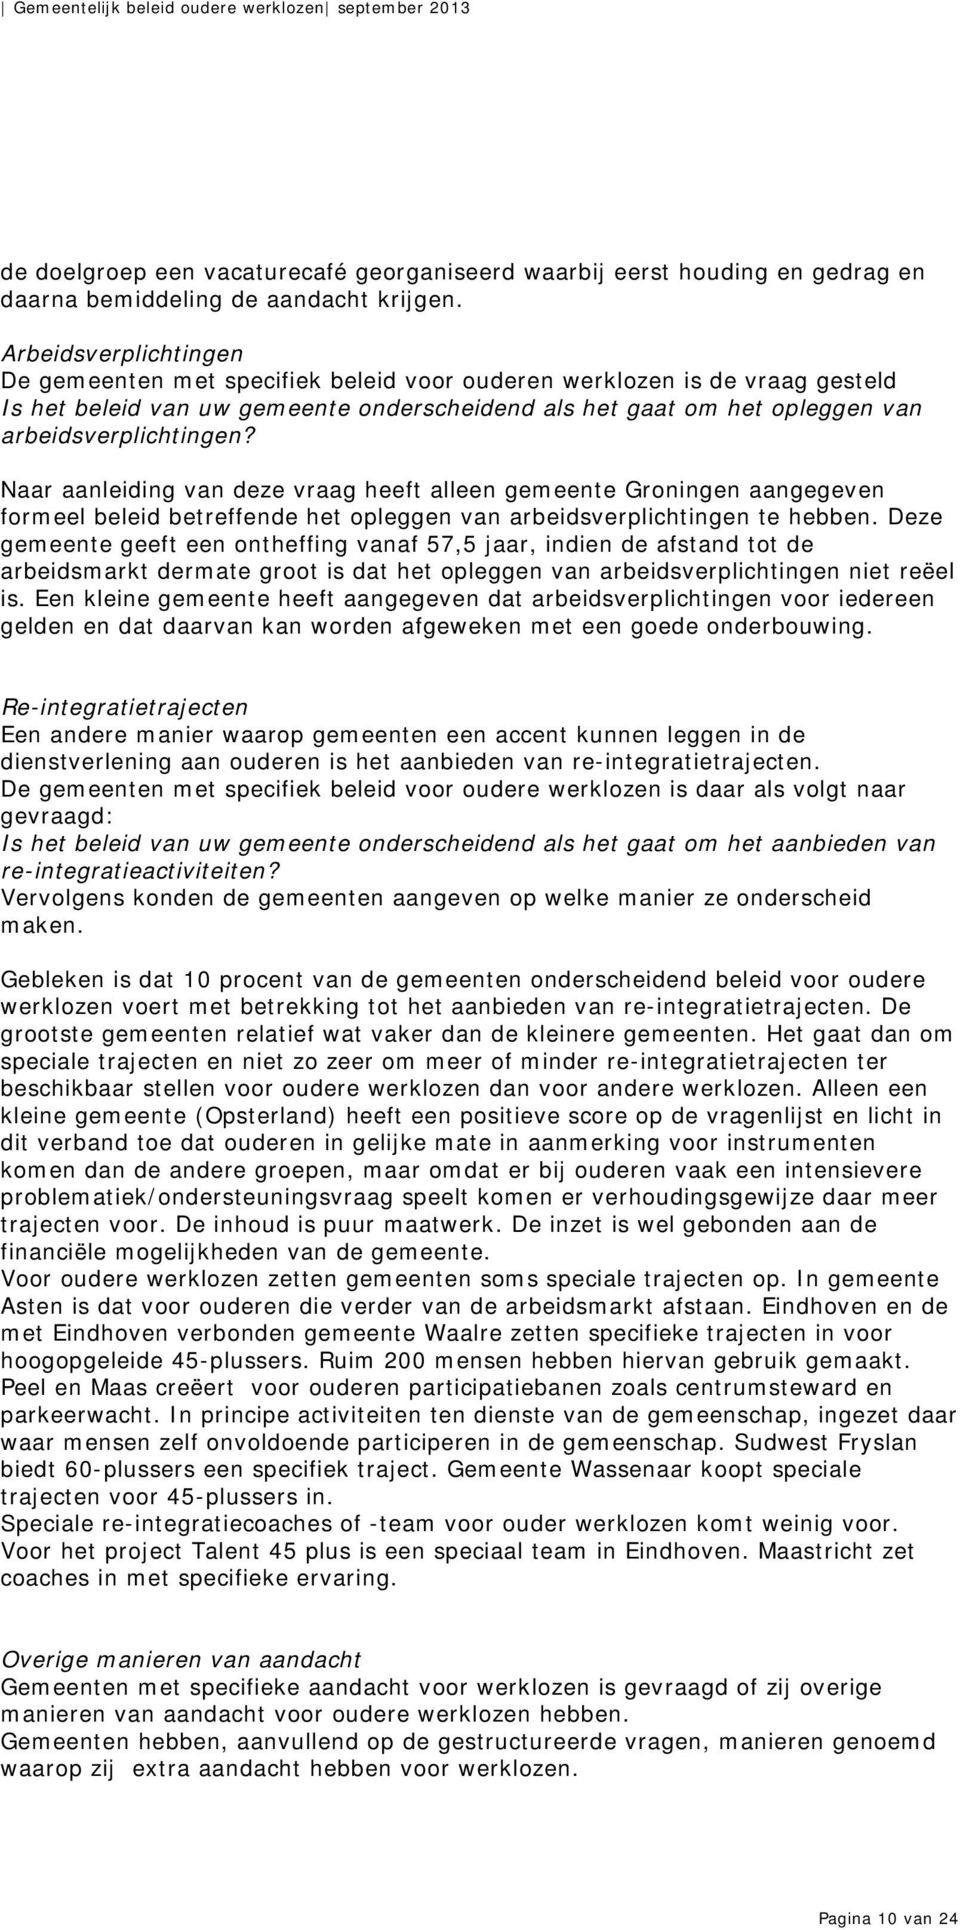 Naar aanleiding van deze vraag heeft alleen gemeente Groningen aangegeven formeel beleid betreffende het opleggen van arbeidsverplichtingen te hebben.